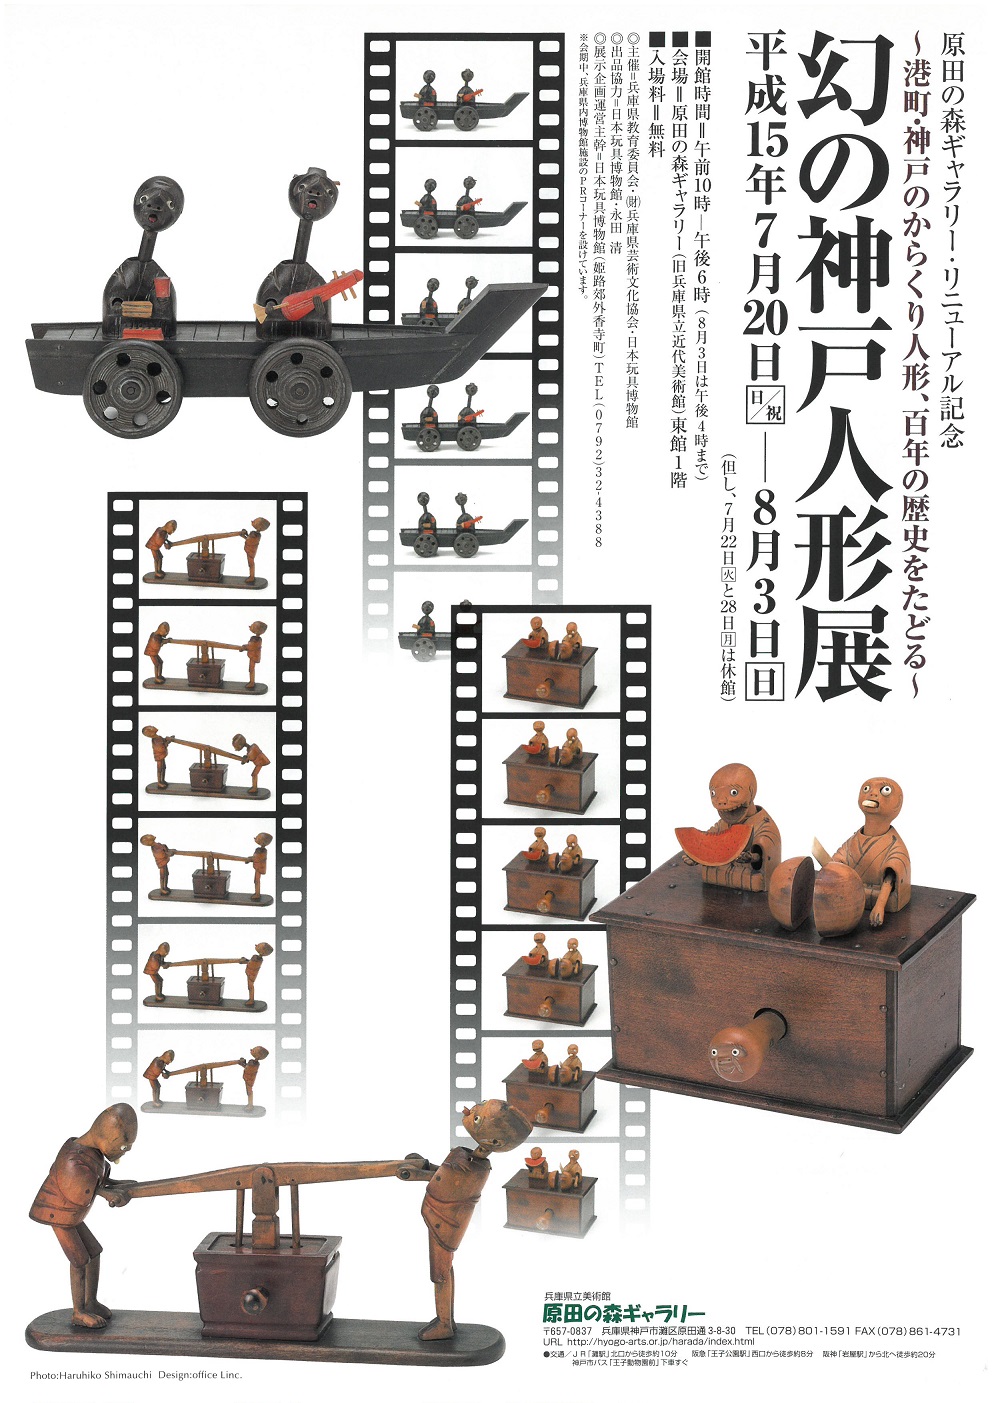 兵庫県立美術館分館 原田の森ギャラリー 幻の神戸人形 100年の歴史をたどる 日本玩具博物館